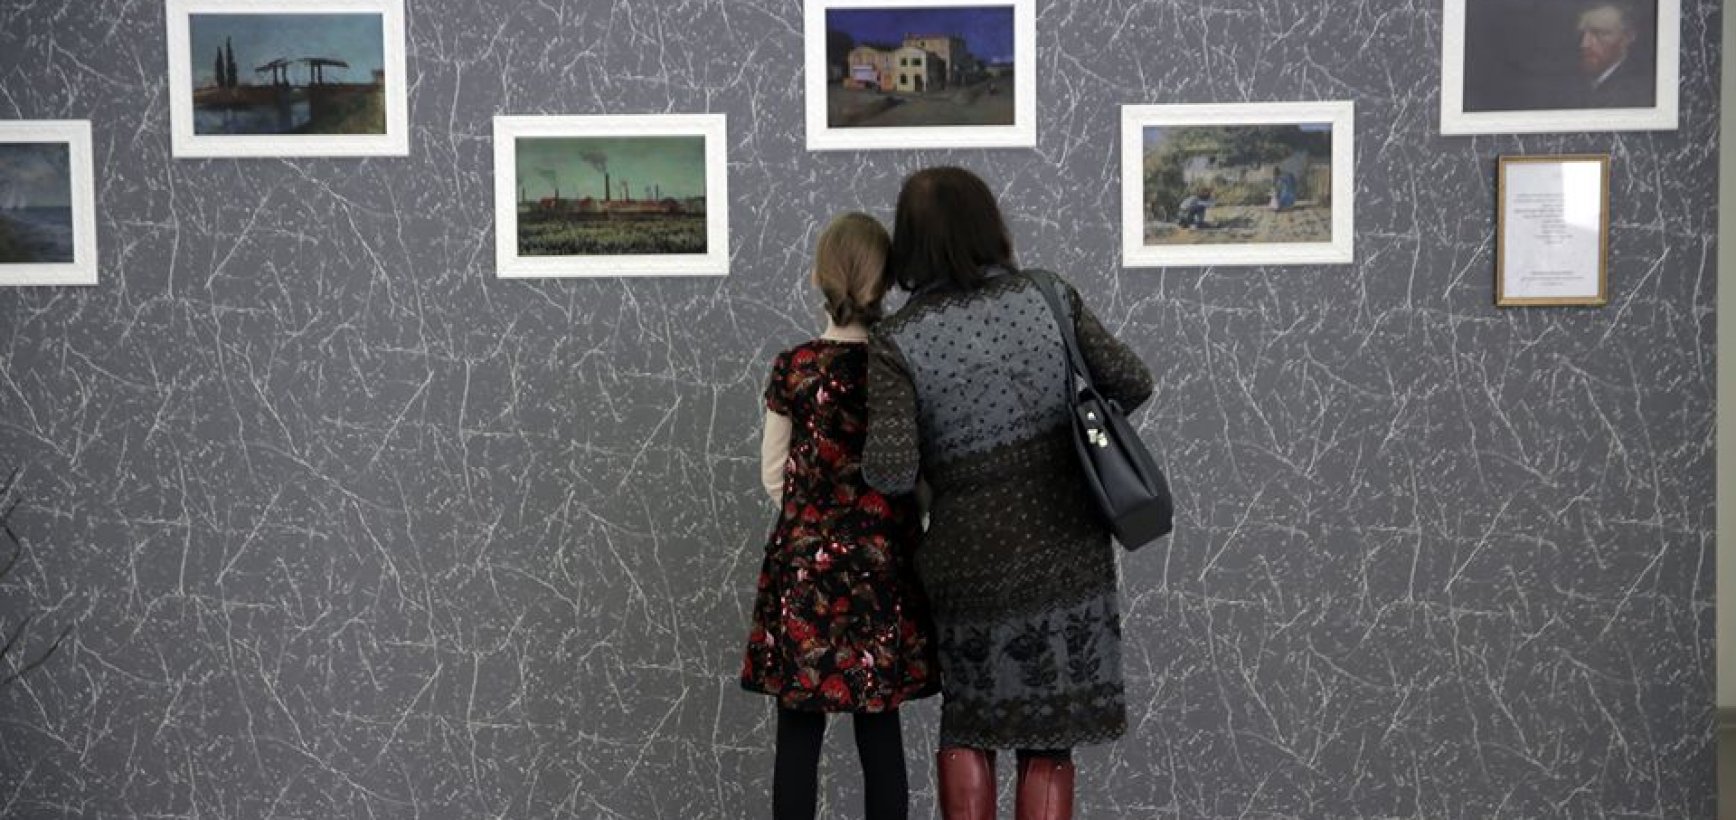 Muziejai gali nebijoti – virtualios parodos nesumažins jaunimo noro juose lankytis „gyvai“ 